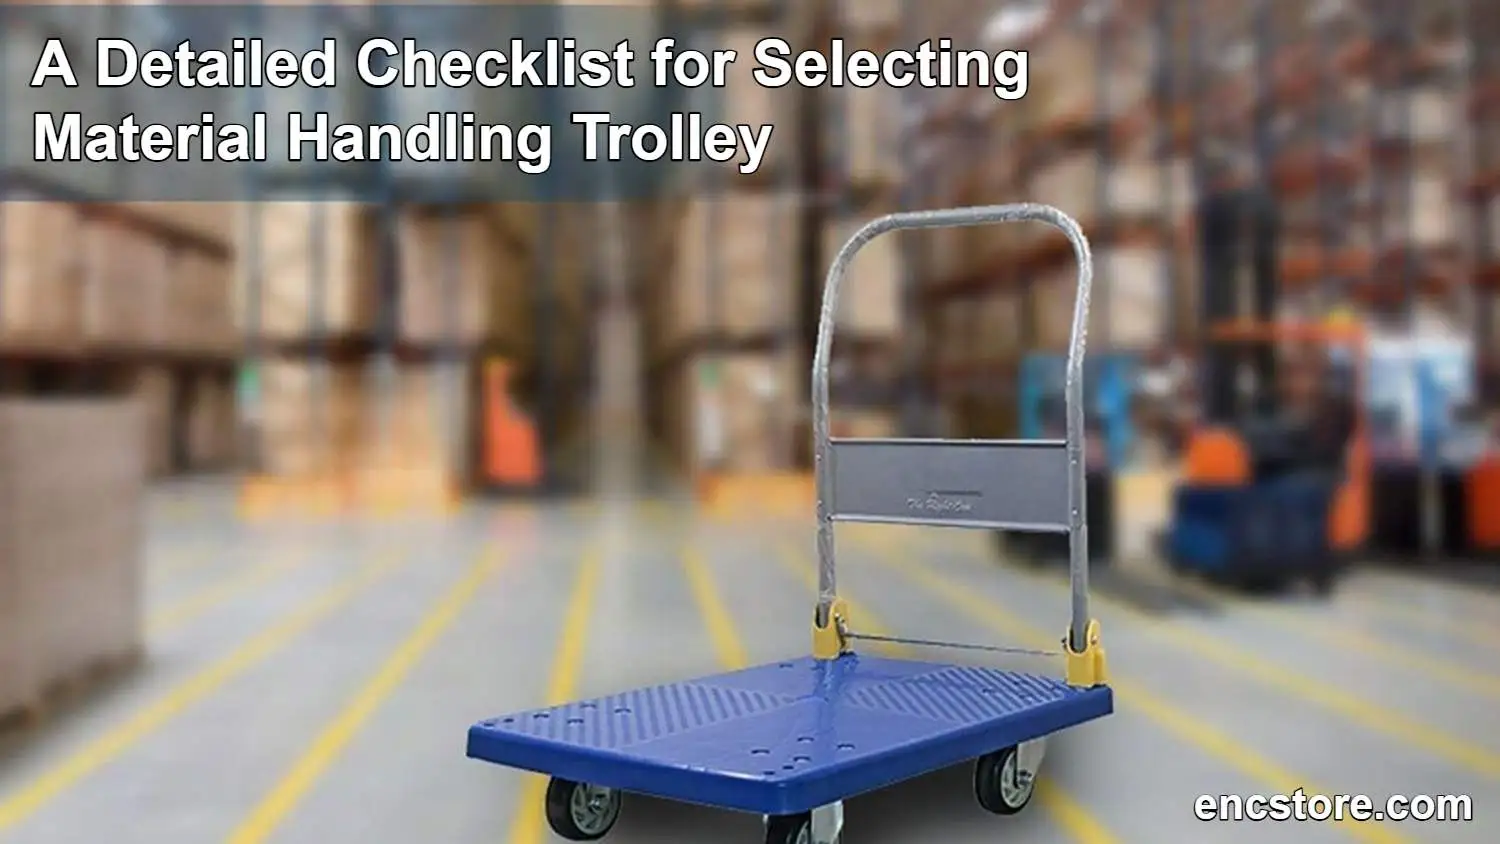 Material Handling Trolley